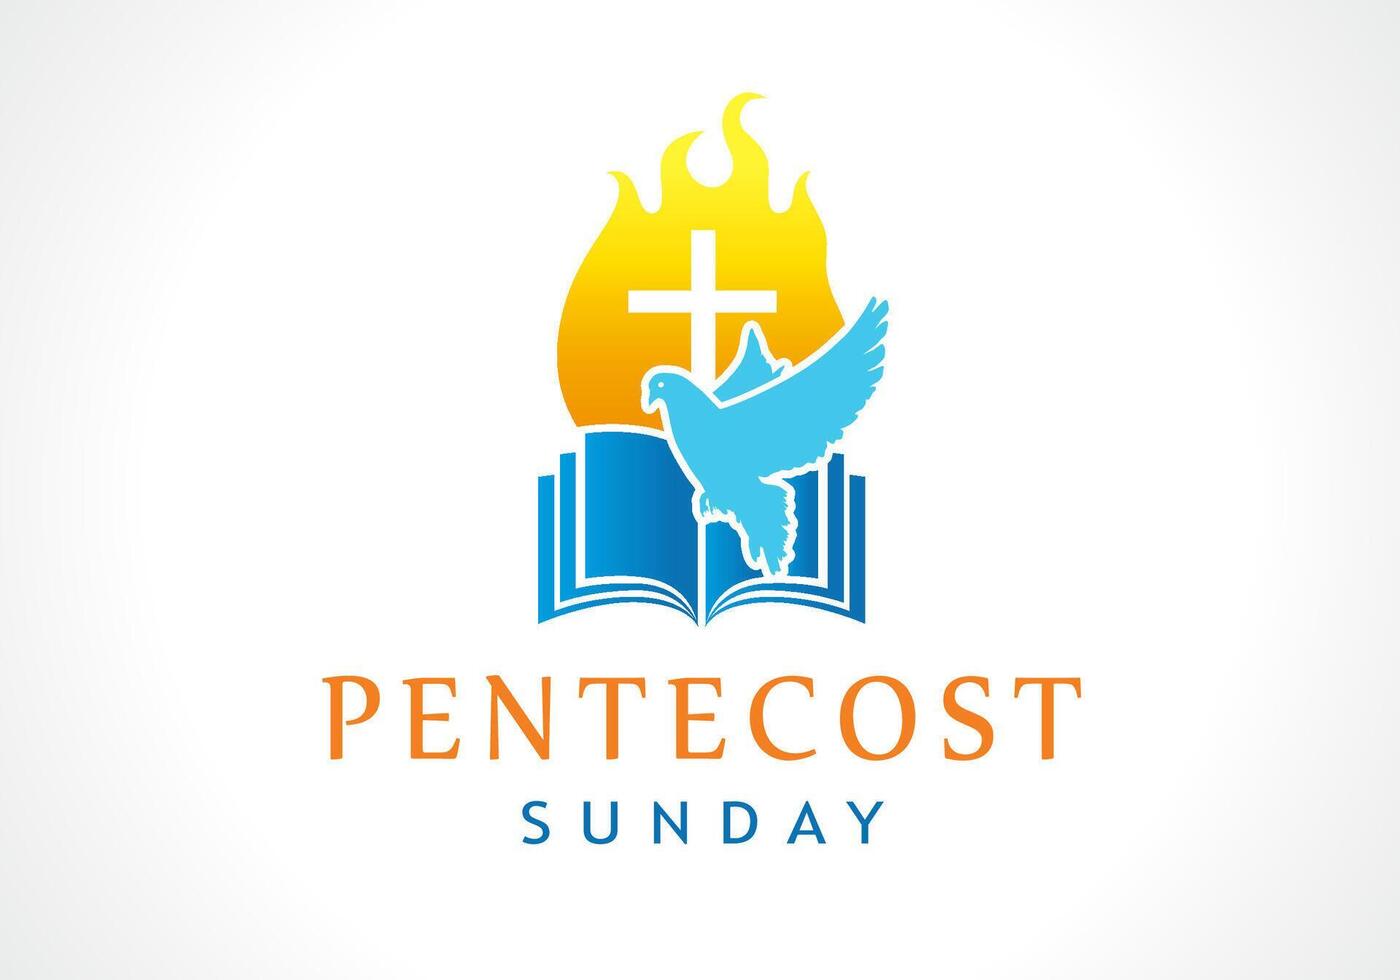 Pentecost Sunday banner. Religious logo template vector